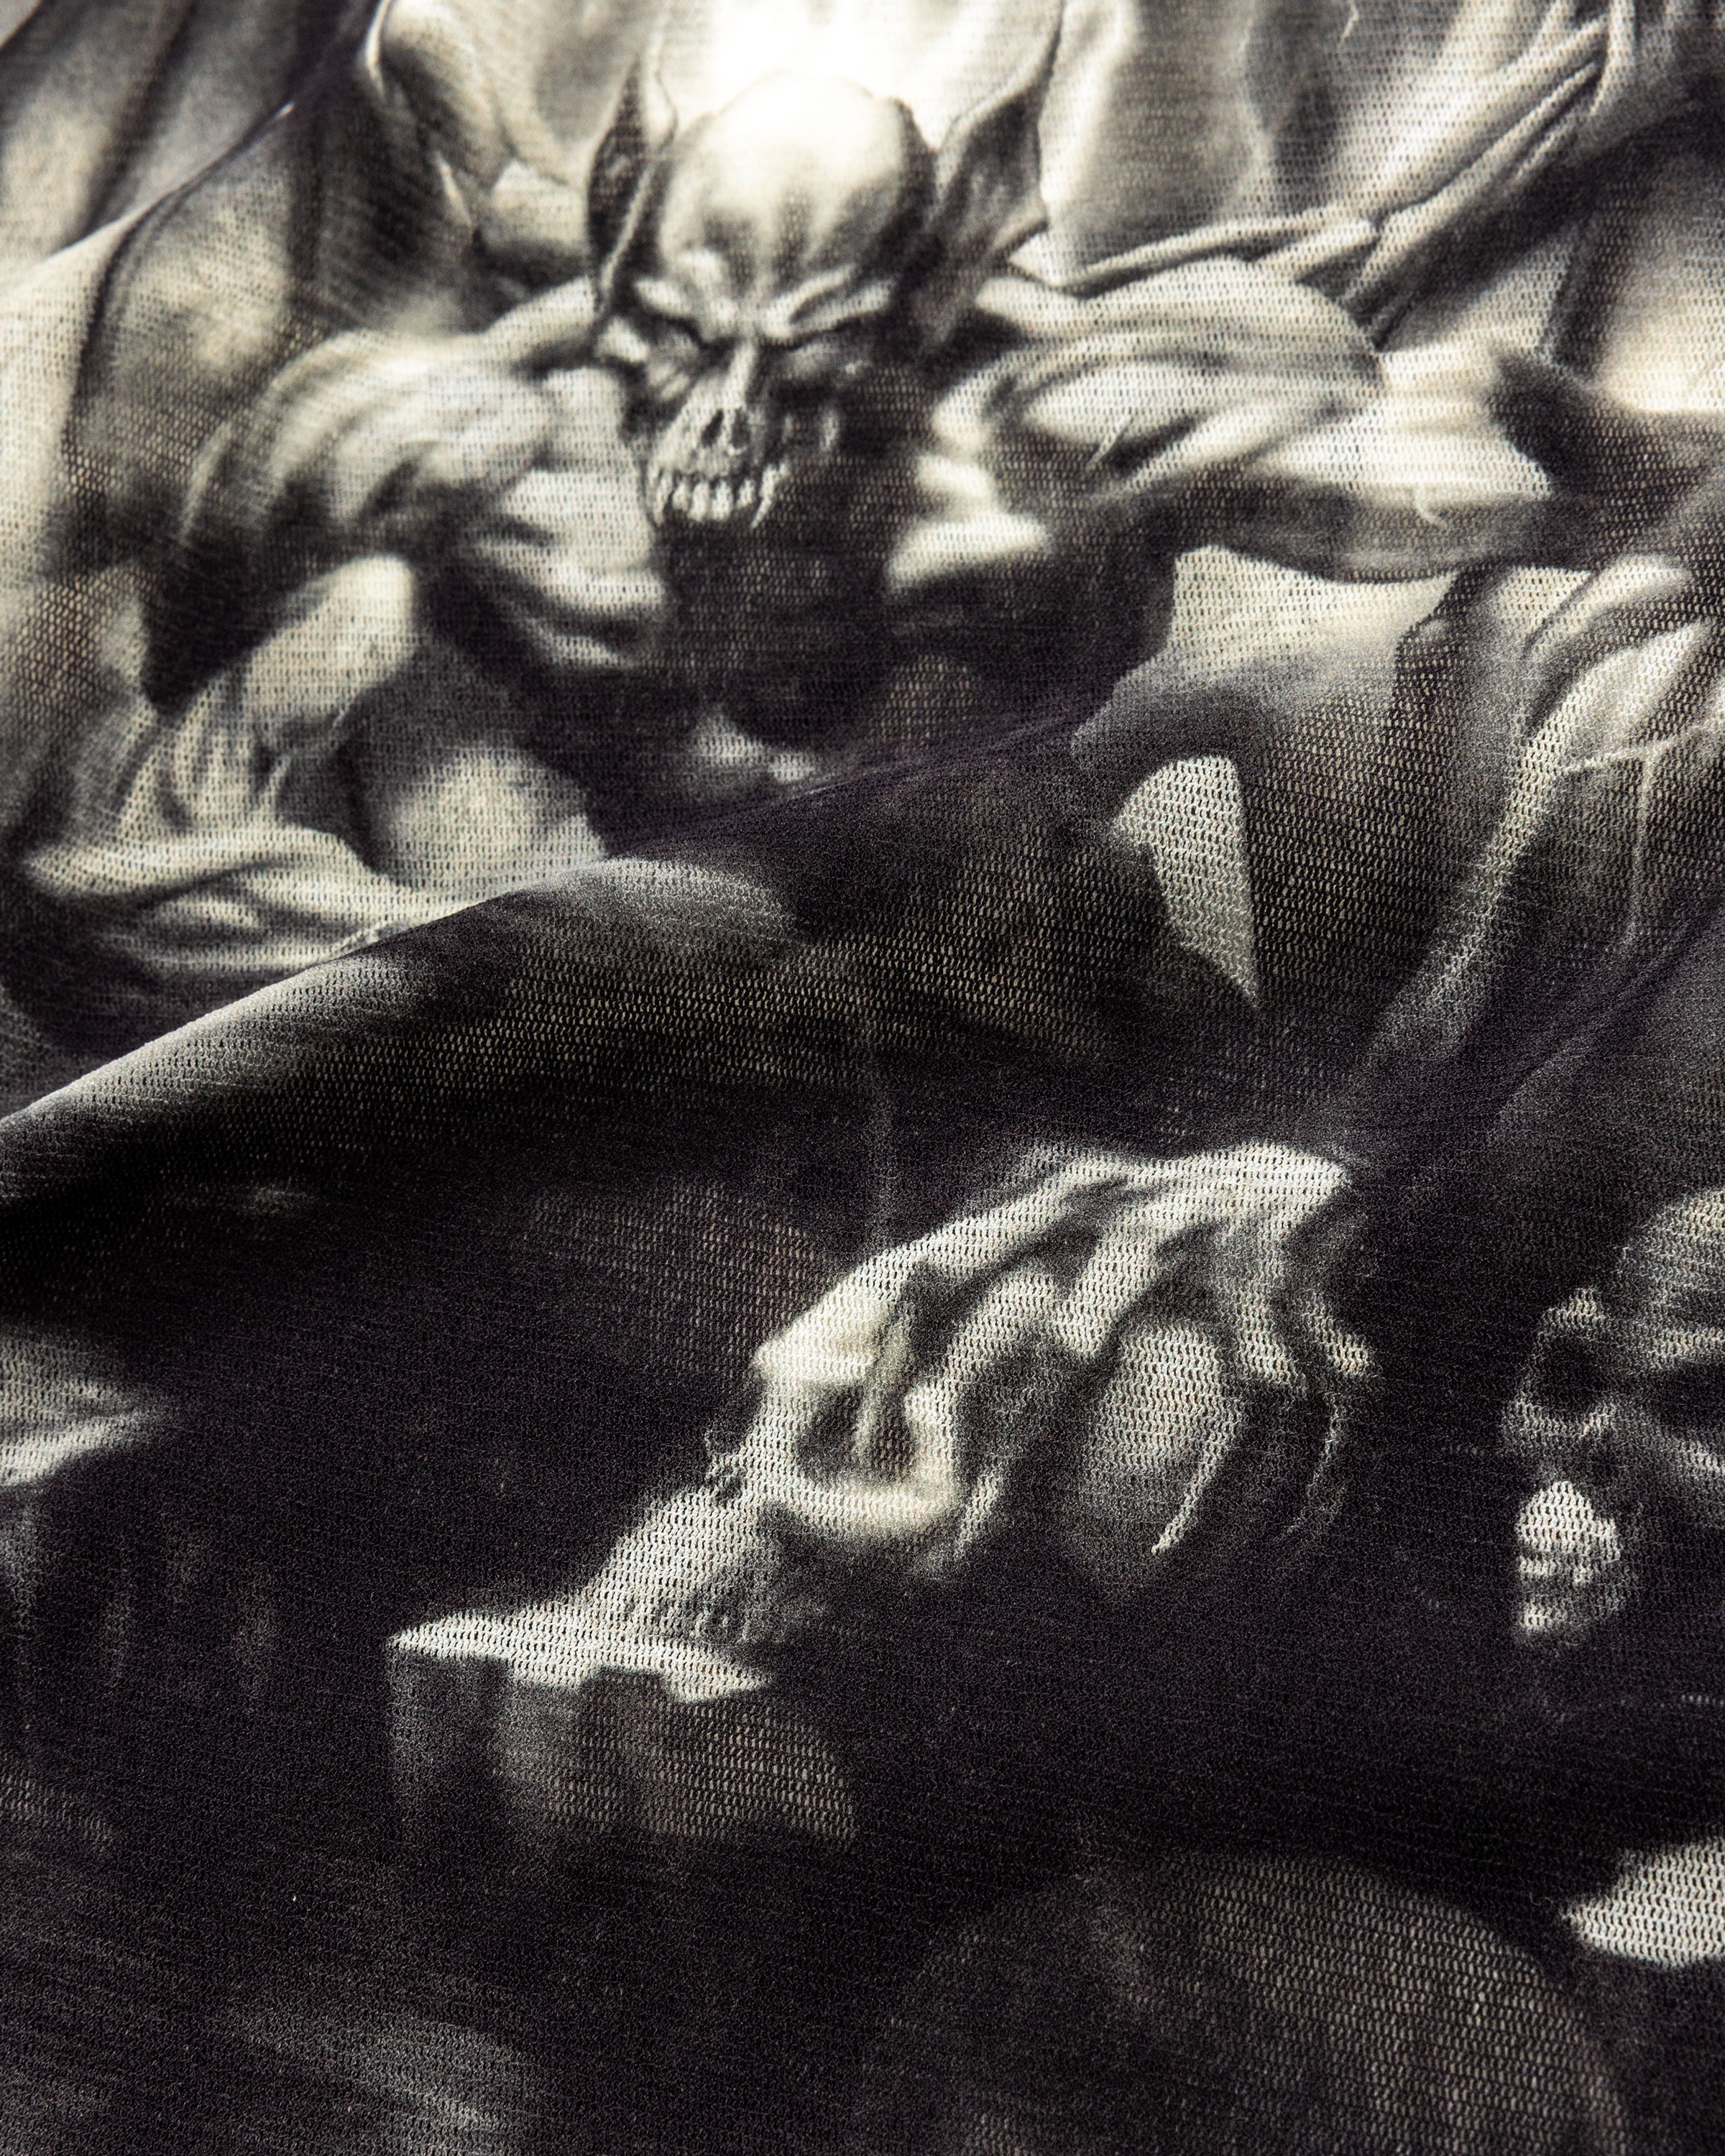 Jean Paul Gaultier – Diablo Top White/Black - 6